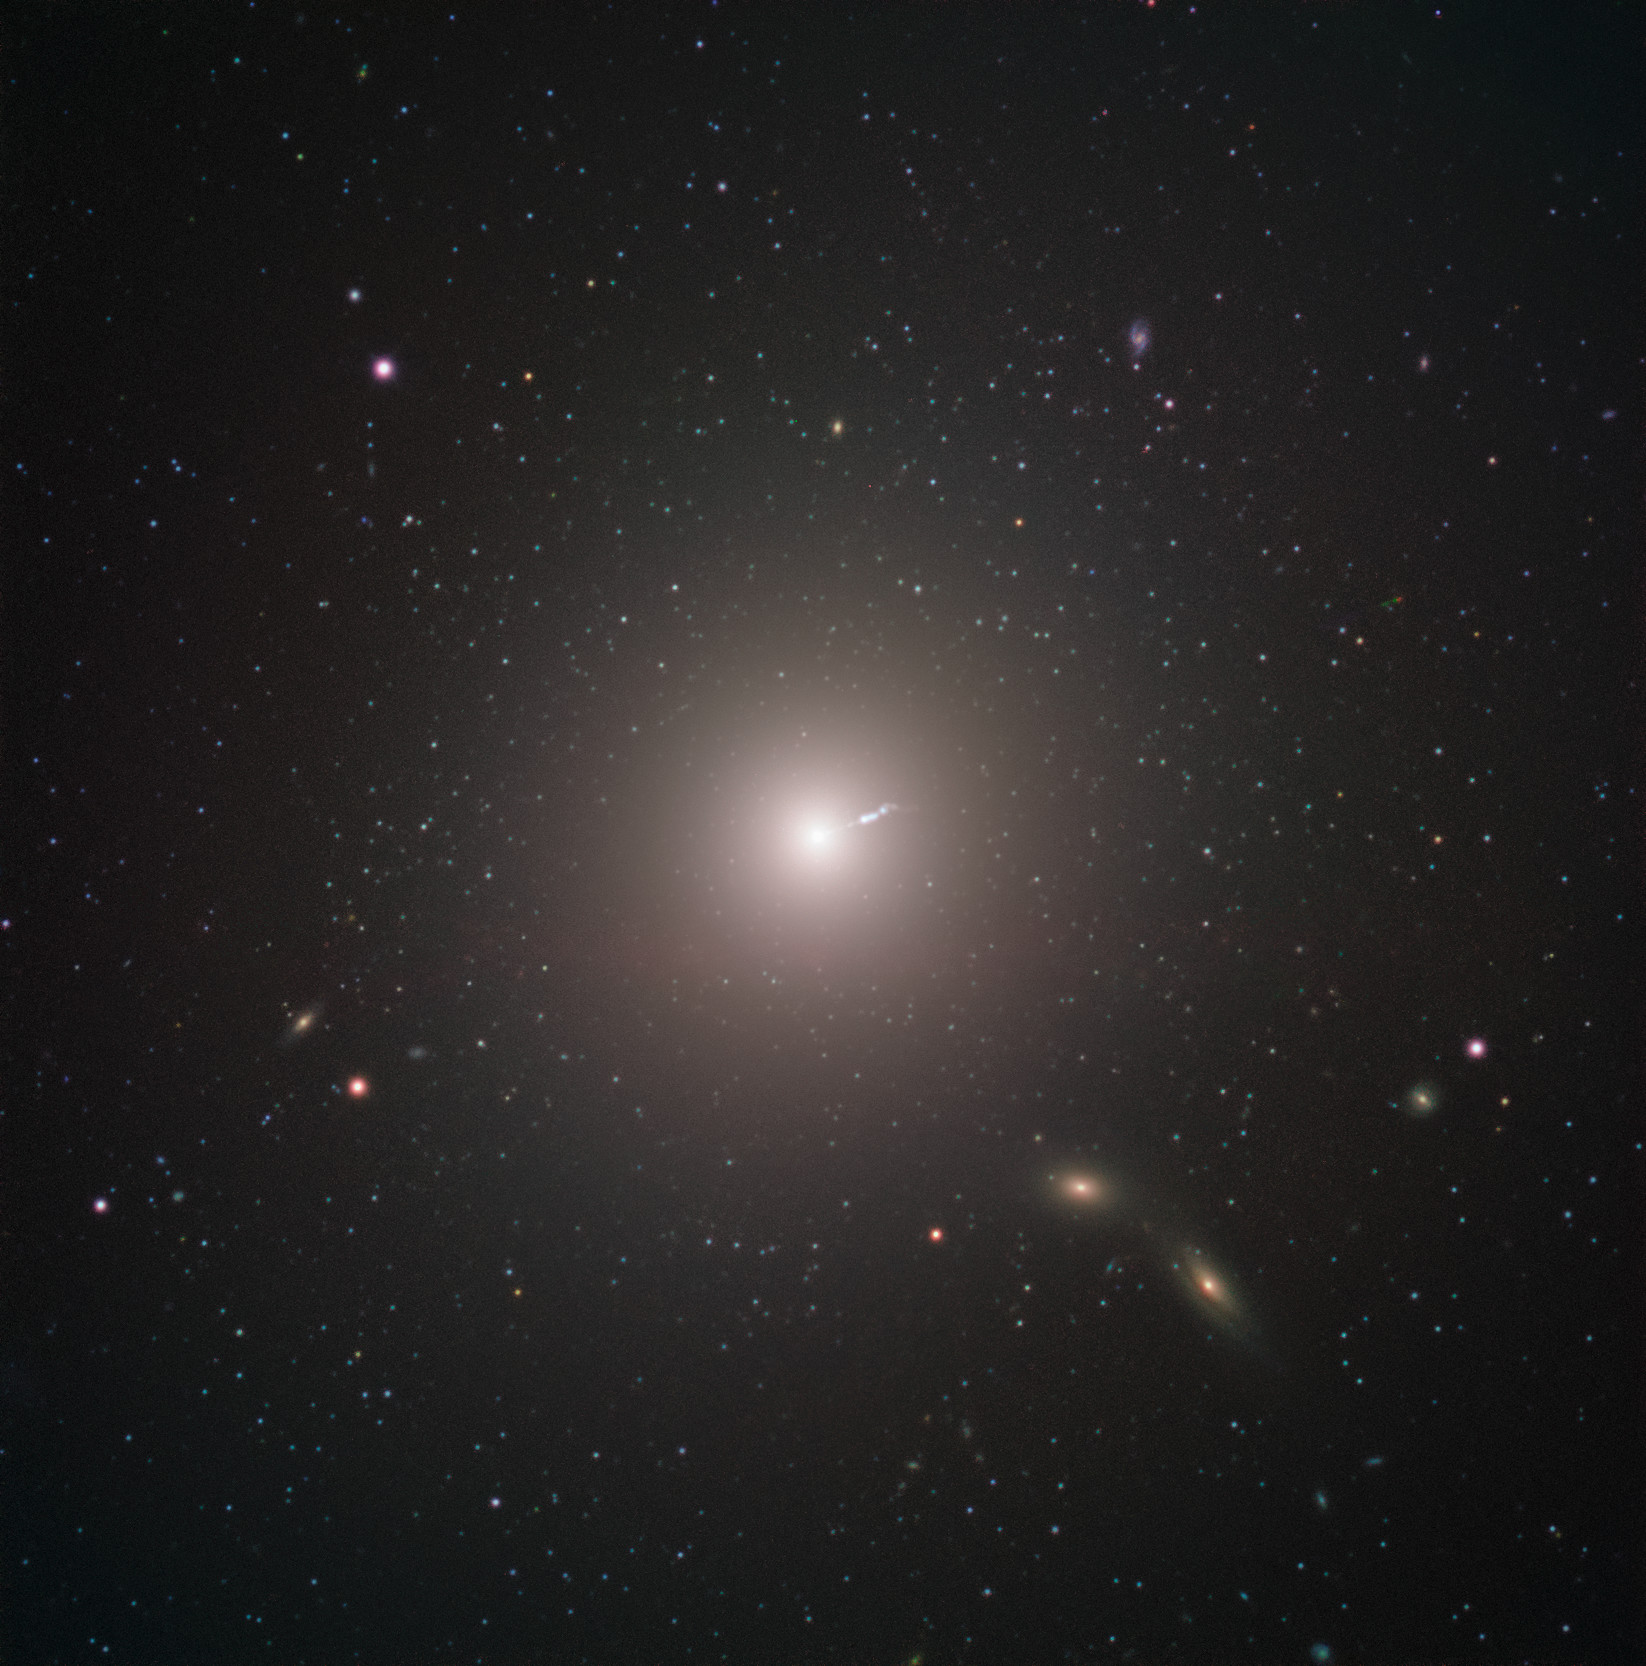 M87 es una enorme galaxia elíptica situada a unos 55 millones de años luz de la Tierra, visible en la constelación de Virgo. Esta imagen fue captada por el instrumento FORS2, instalado en el VLT (Very Large Telescope) de ESO, como parte del programa Joyas cósmicas de ESO, una iniciativa de divulgación que utiliza los telescopios de ESO para producir imágenes de objetos interesantes, enigmáticos o visualmente atractivos, con un fin educativo y divulgativo. El programa hace uso de tiempo de telescopio que no puede utilizarse para observaciones científicas, generando impresionantes imágenes de algunos de los objetos más sorprendentes en el cielo nocturno. En caso de que los datos obtenidos sean útiles para su uso científico en el futuro, estas observaciones se conservan y se ponen a disposición de los astrónomos a través de los archivos científicos de ESO. Crédito: ESO